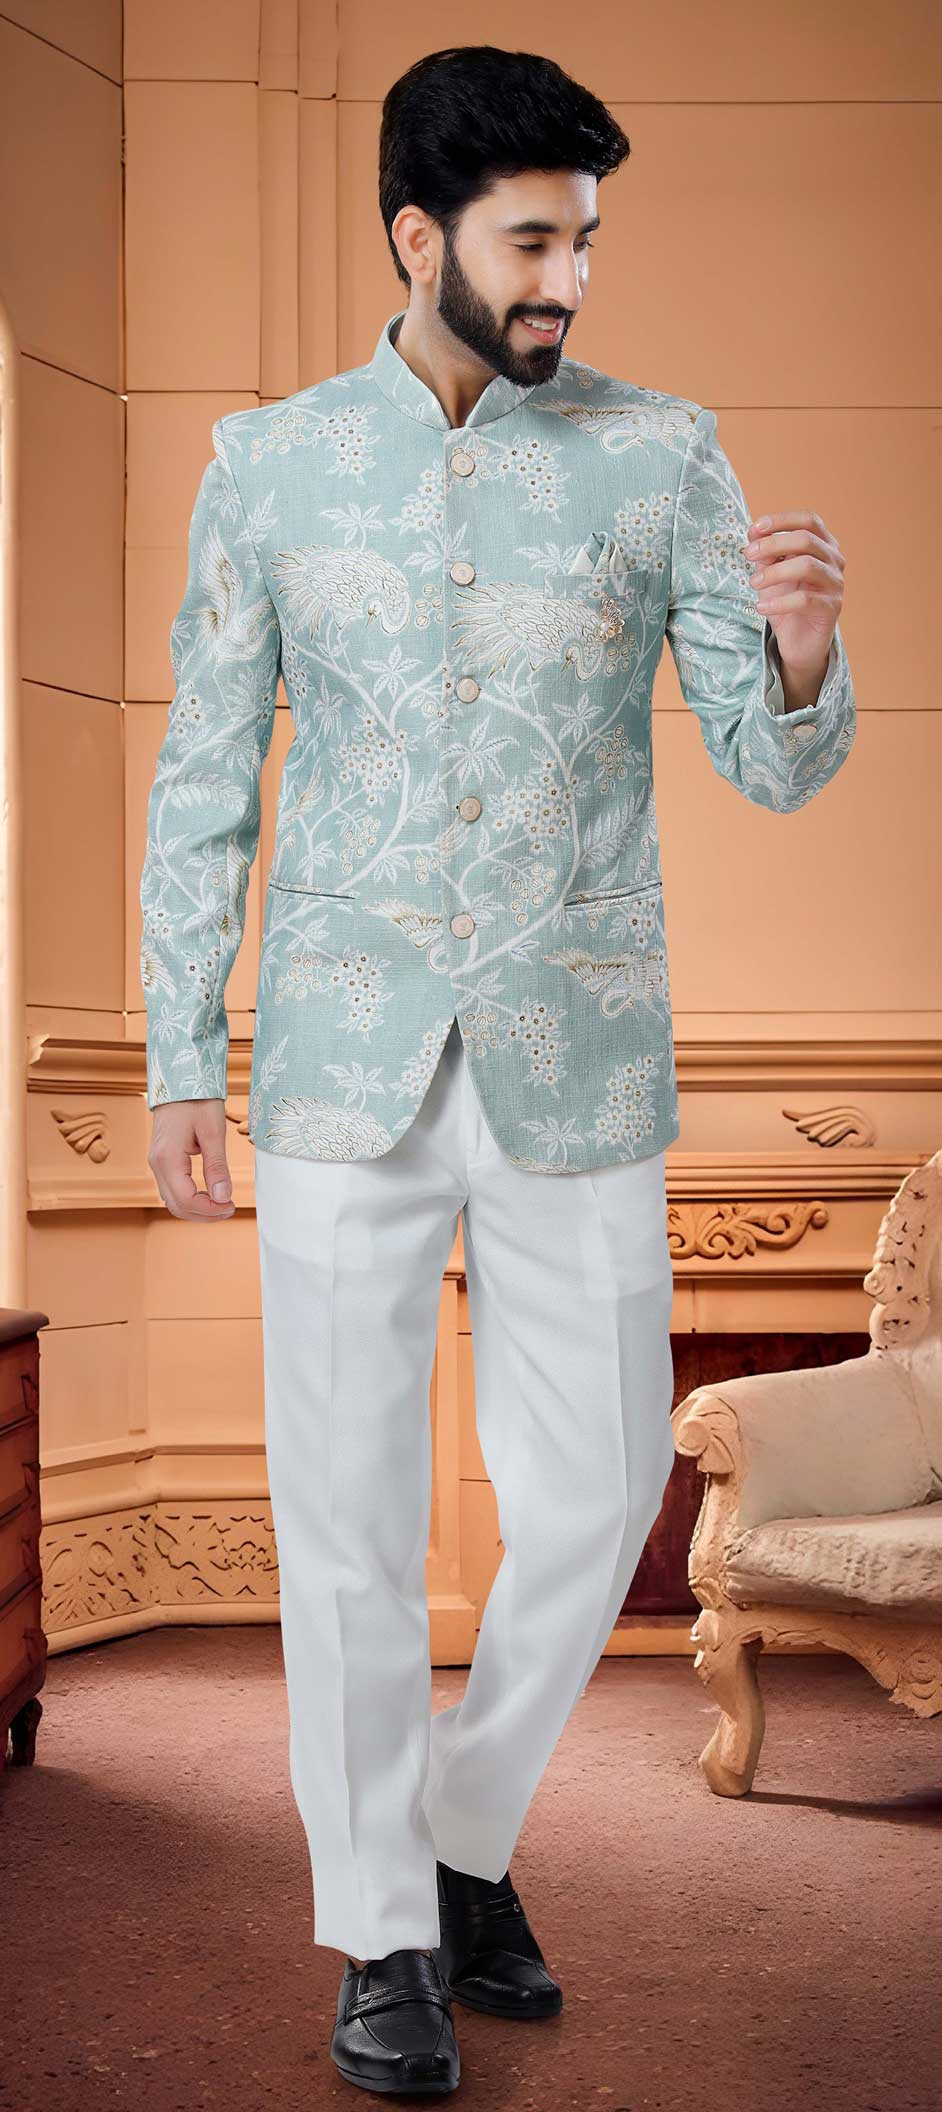 Jodhpuri Suit Designs: Style A Jodhpuri Suit For A Modern Look